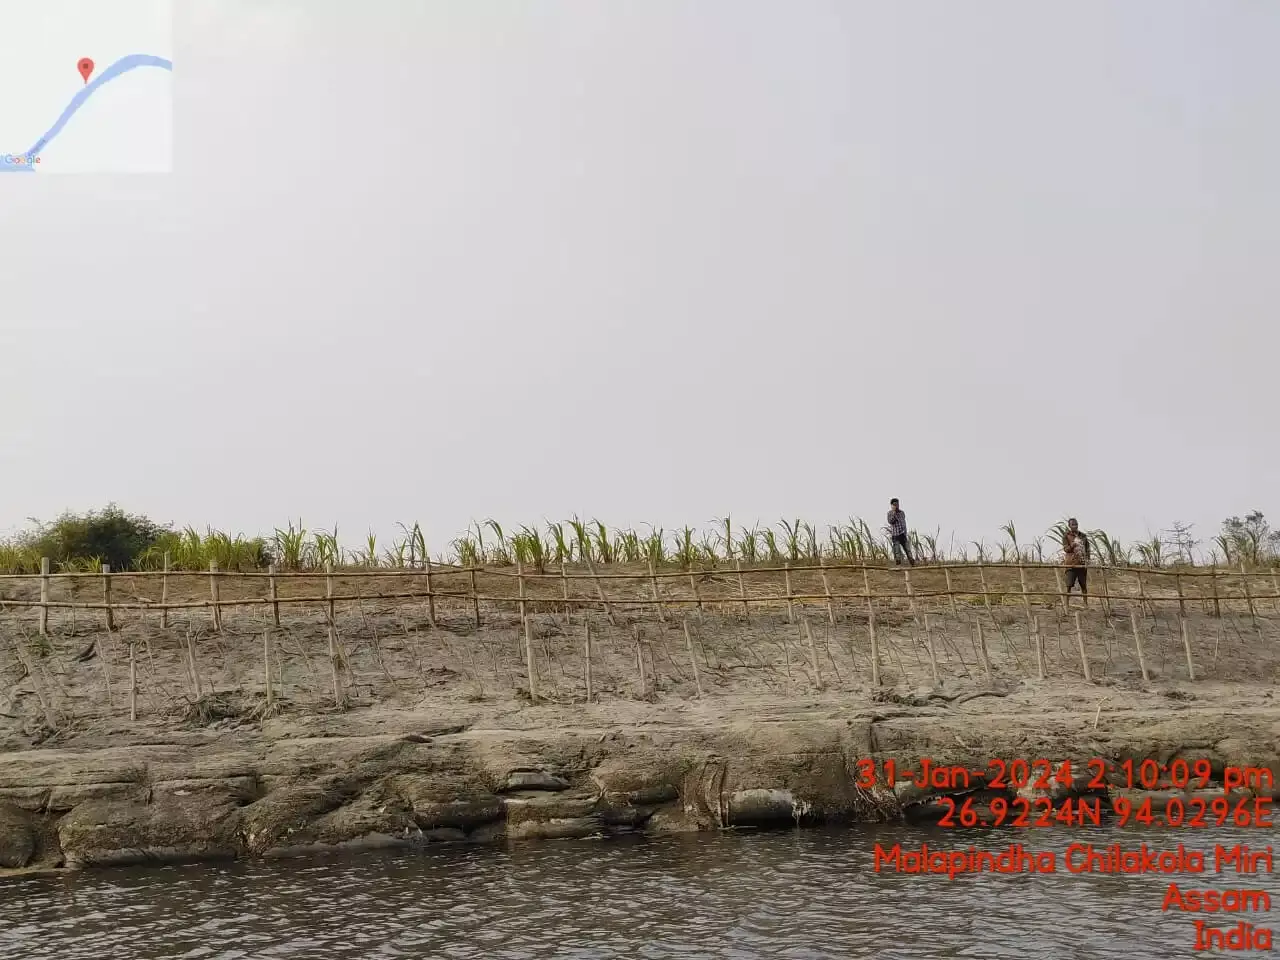 आईआईटी-गुवाहाटी का ब्रह्मा-2डी मॉडल माजुली में नदी के कटाव को सफलतापूर्वक रोकता